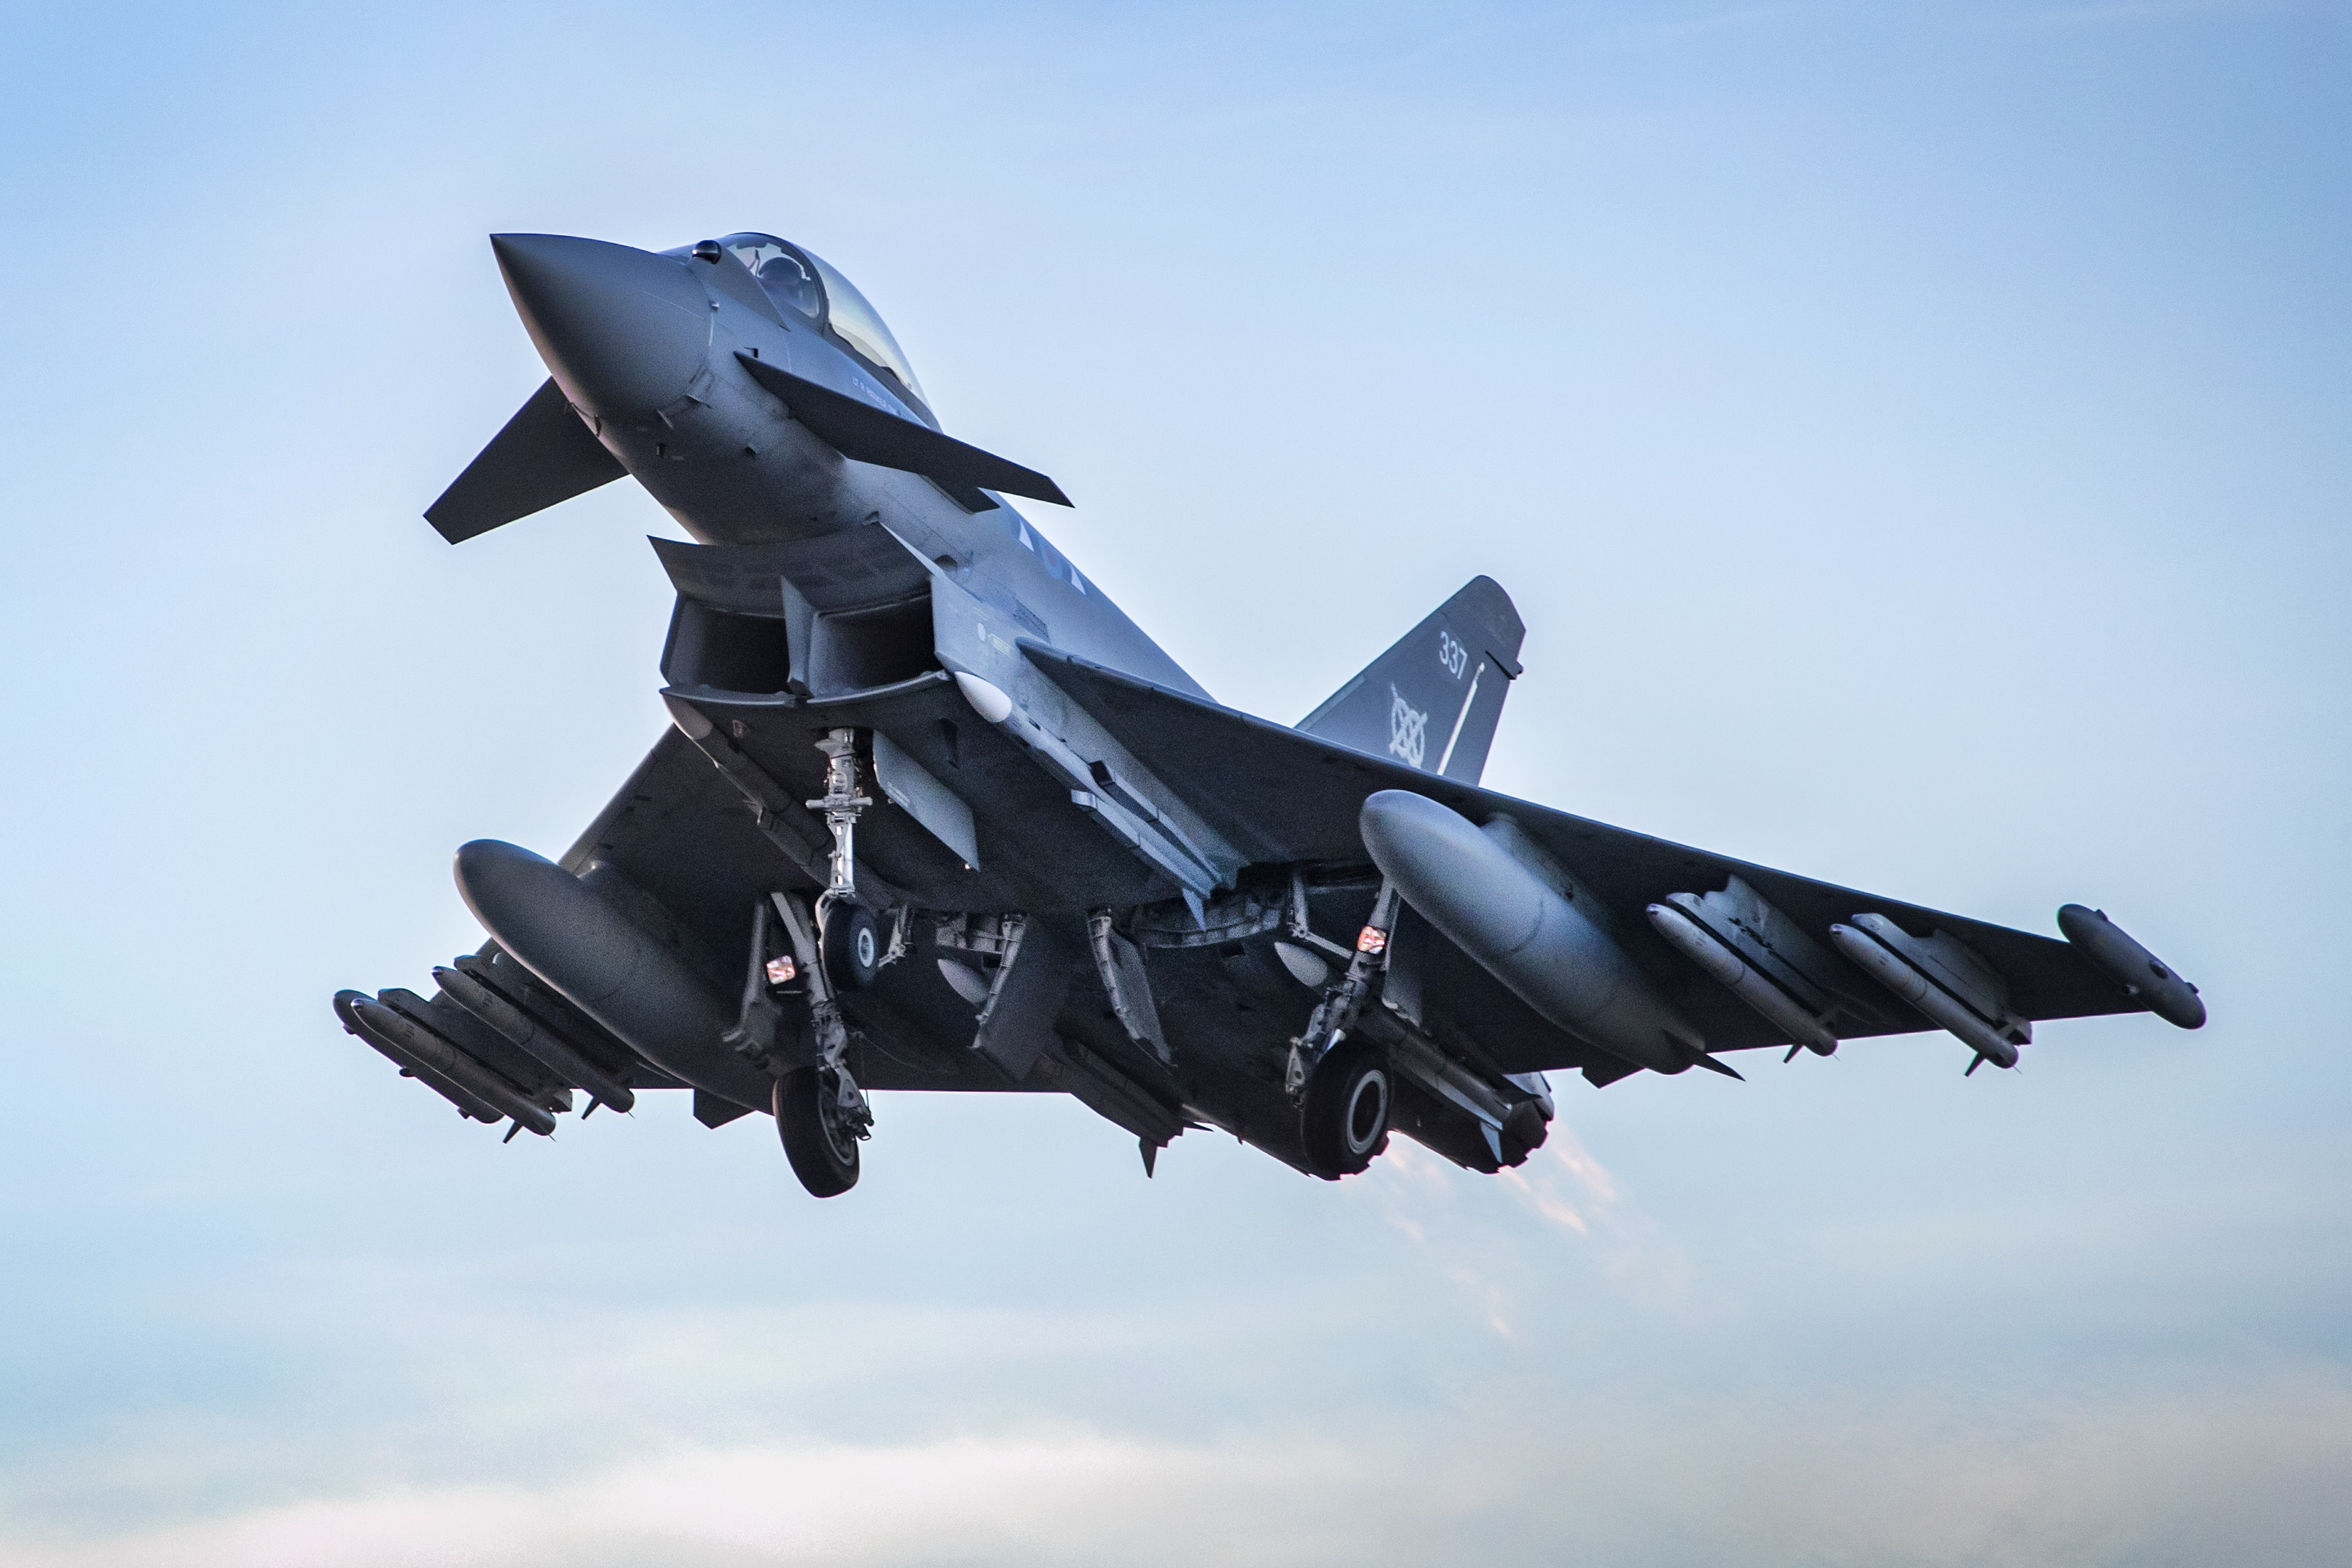 Für die Angriffe soll heute ein RAF-Typhoon-Kampfflugzeug eingesetzt worden sein